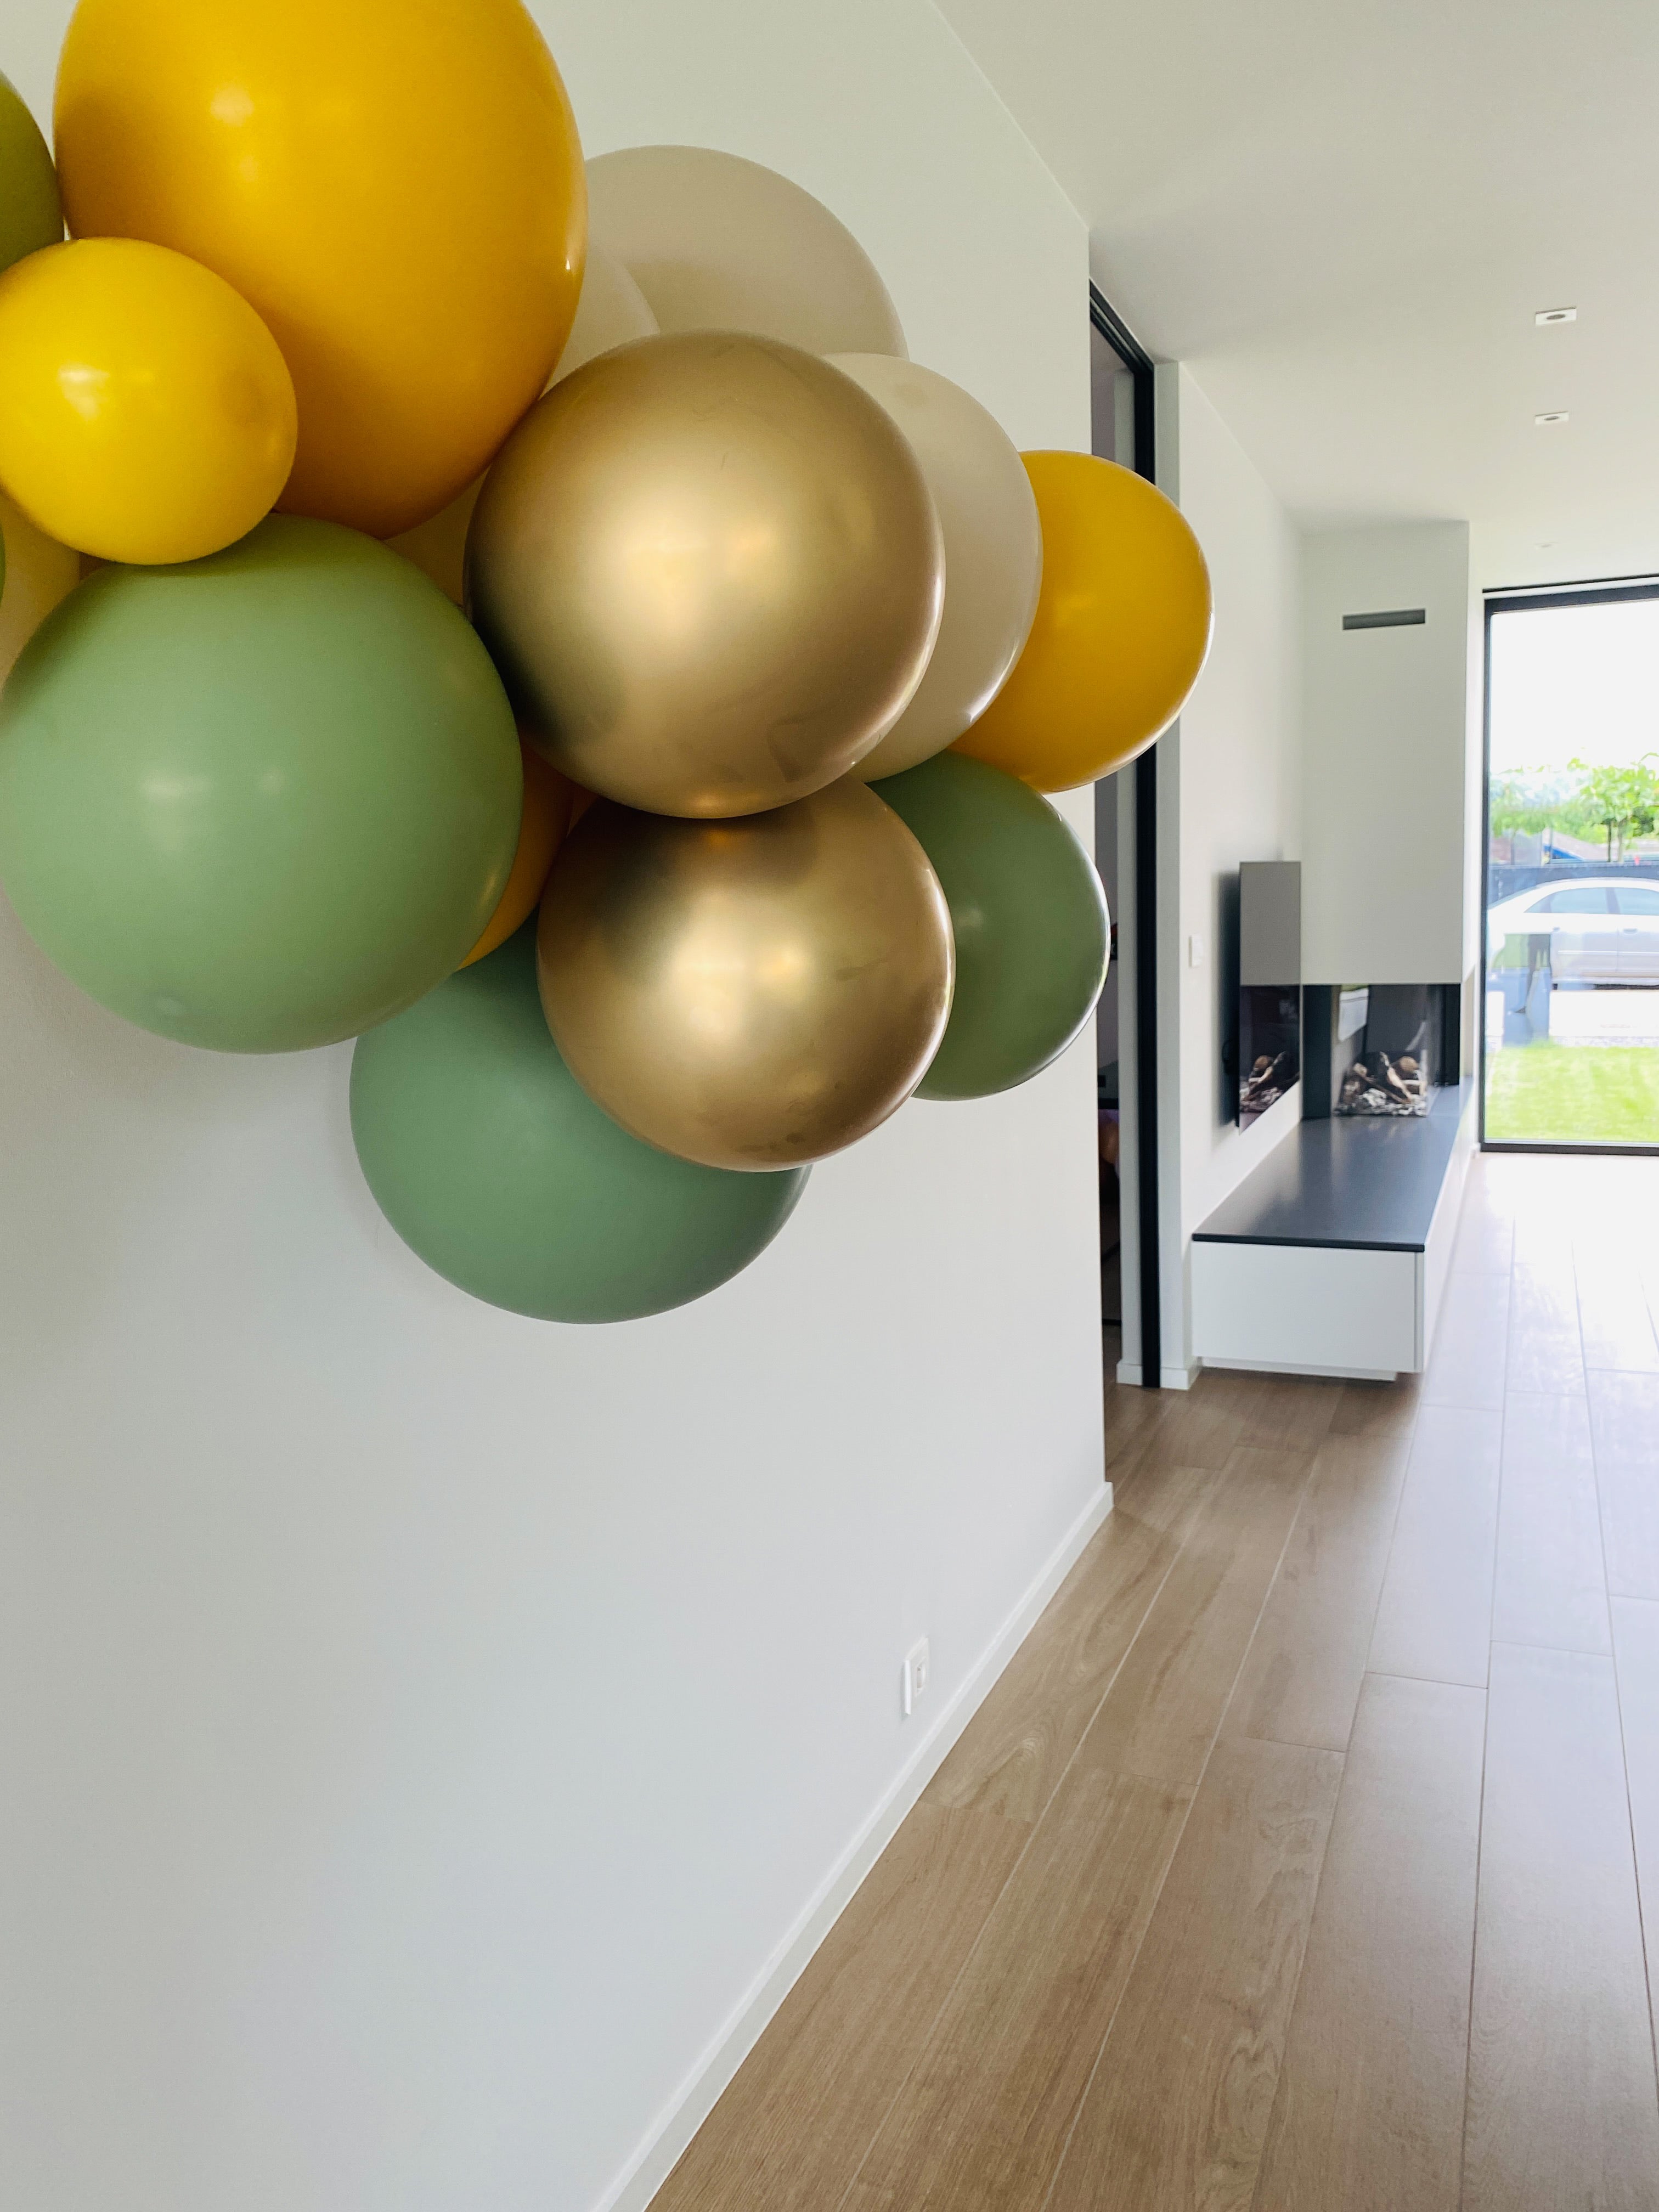 Ballonslinger ballonnenboog mosterd geel eucalyptus groen zand goud als feestdecoratie